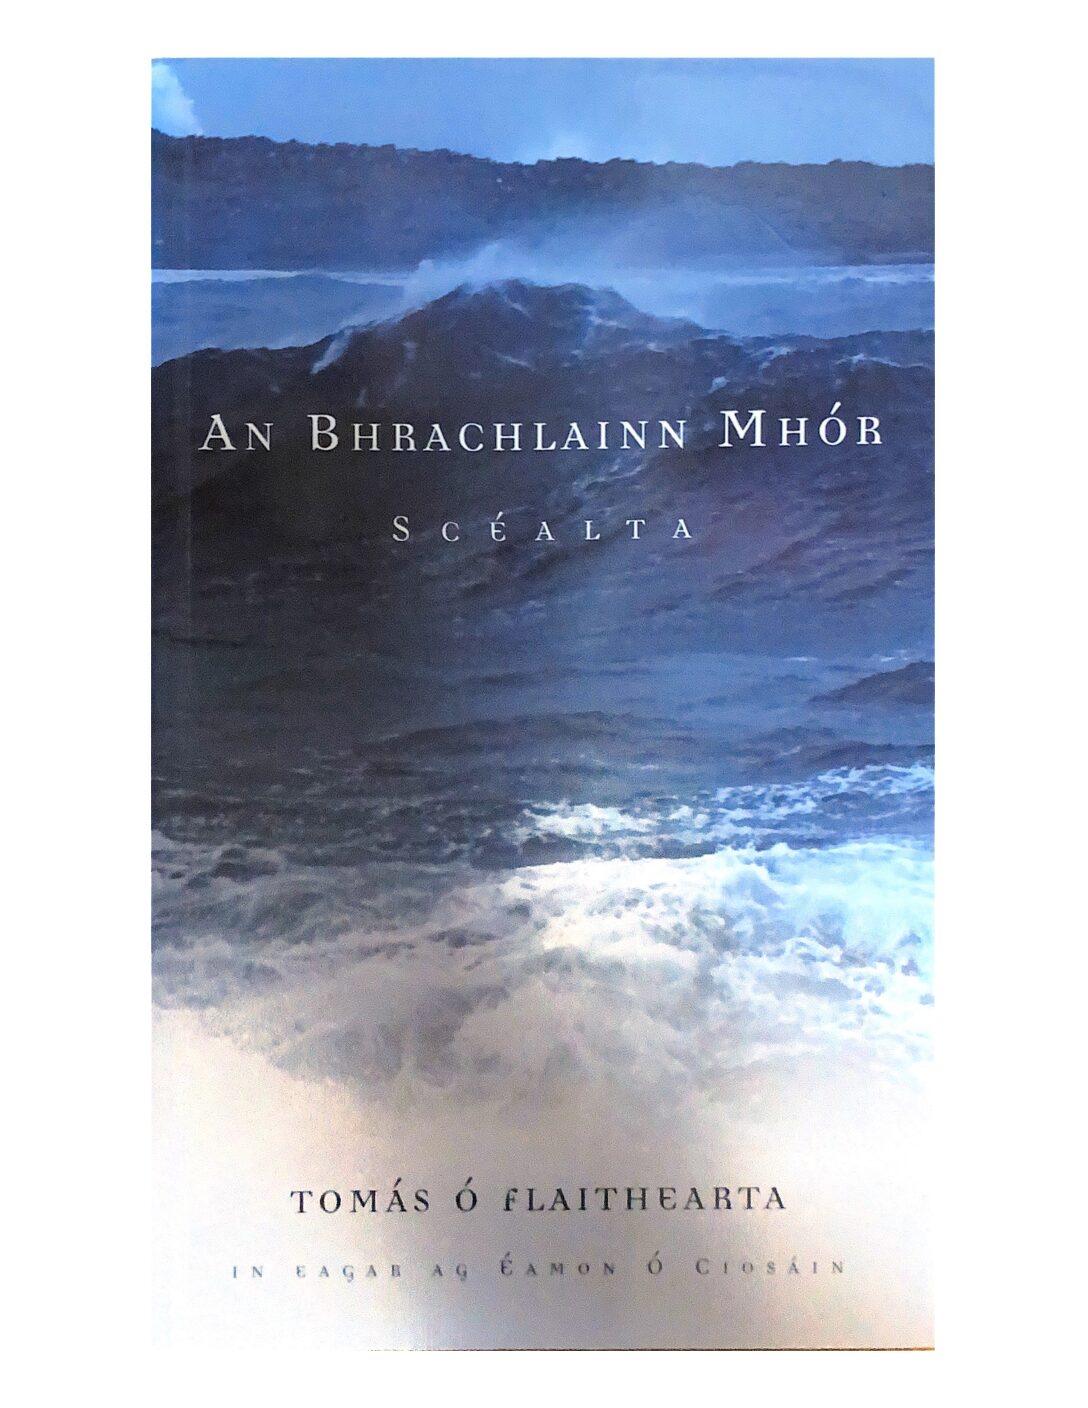 An Bhrachlainn Mhór by Tomás Ó Flaithearta